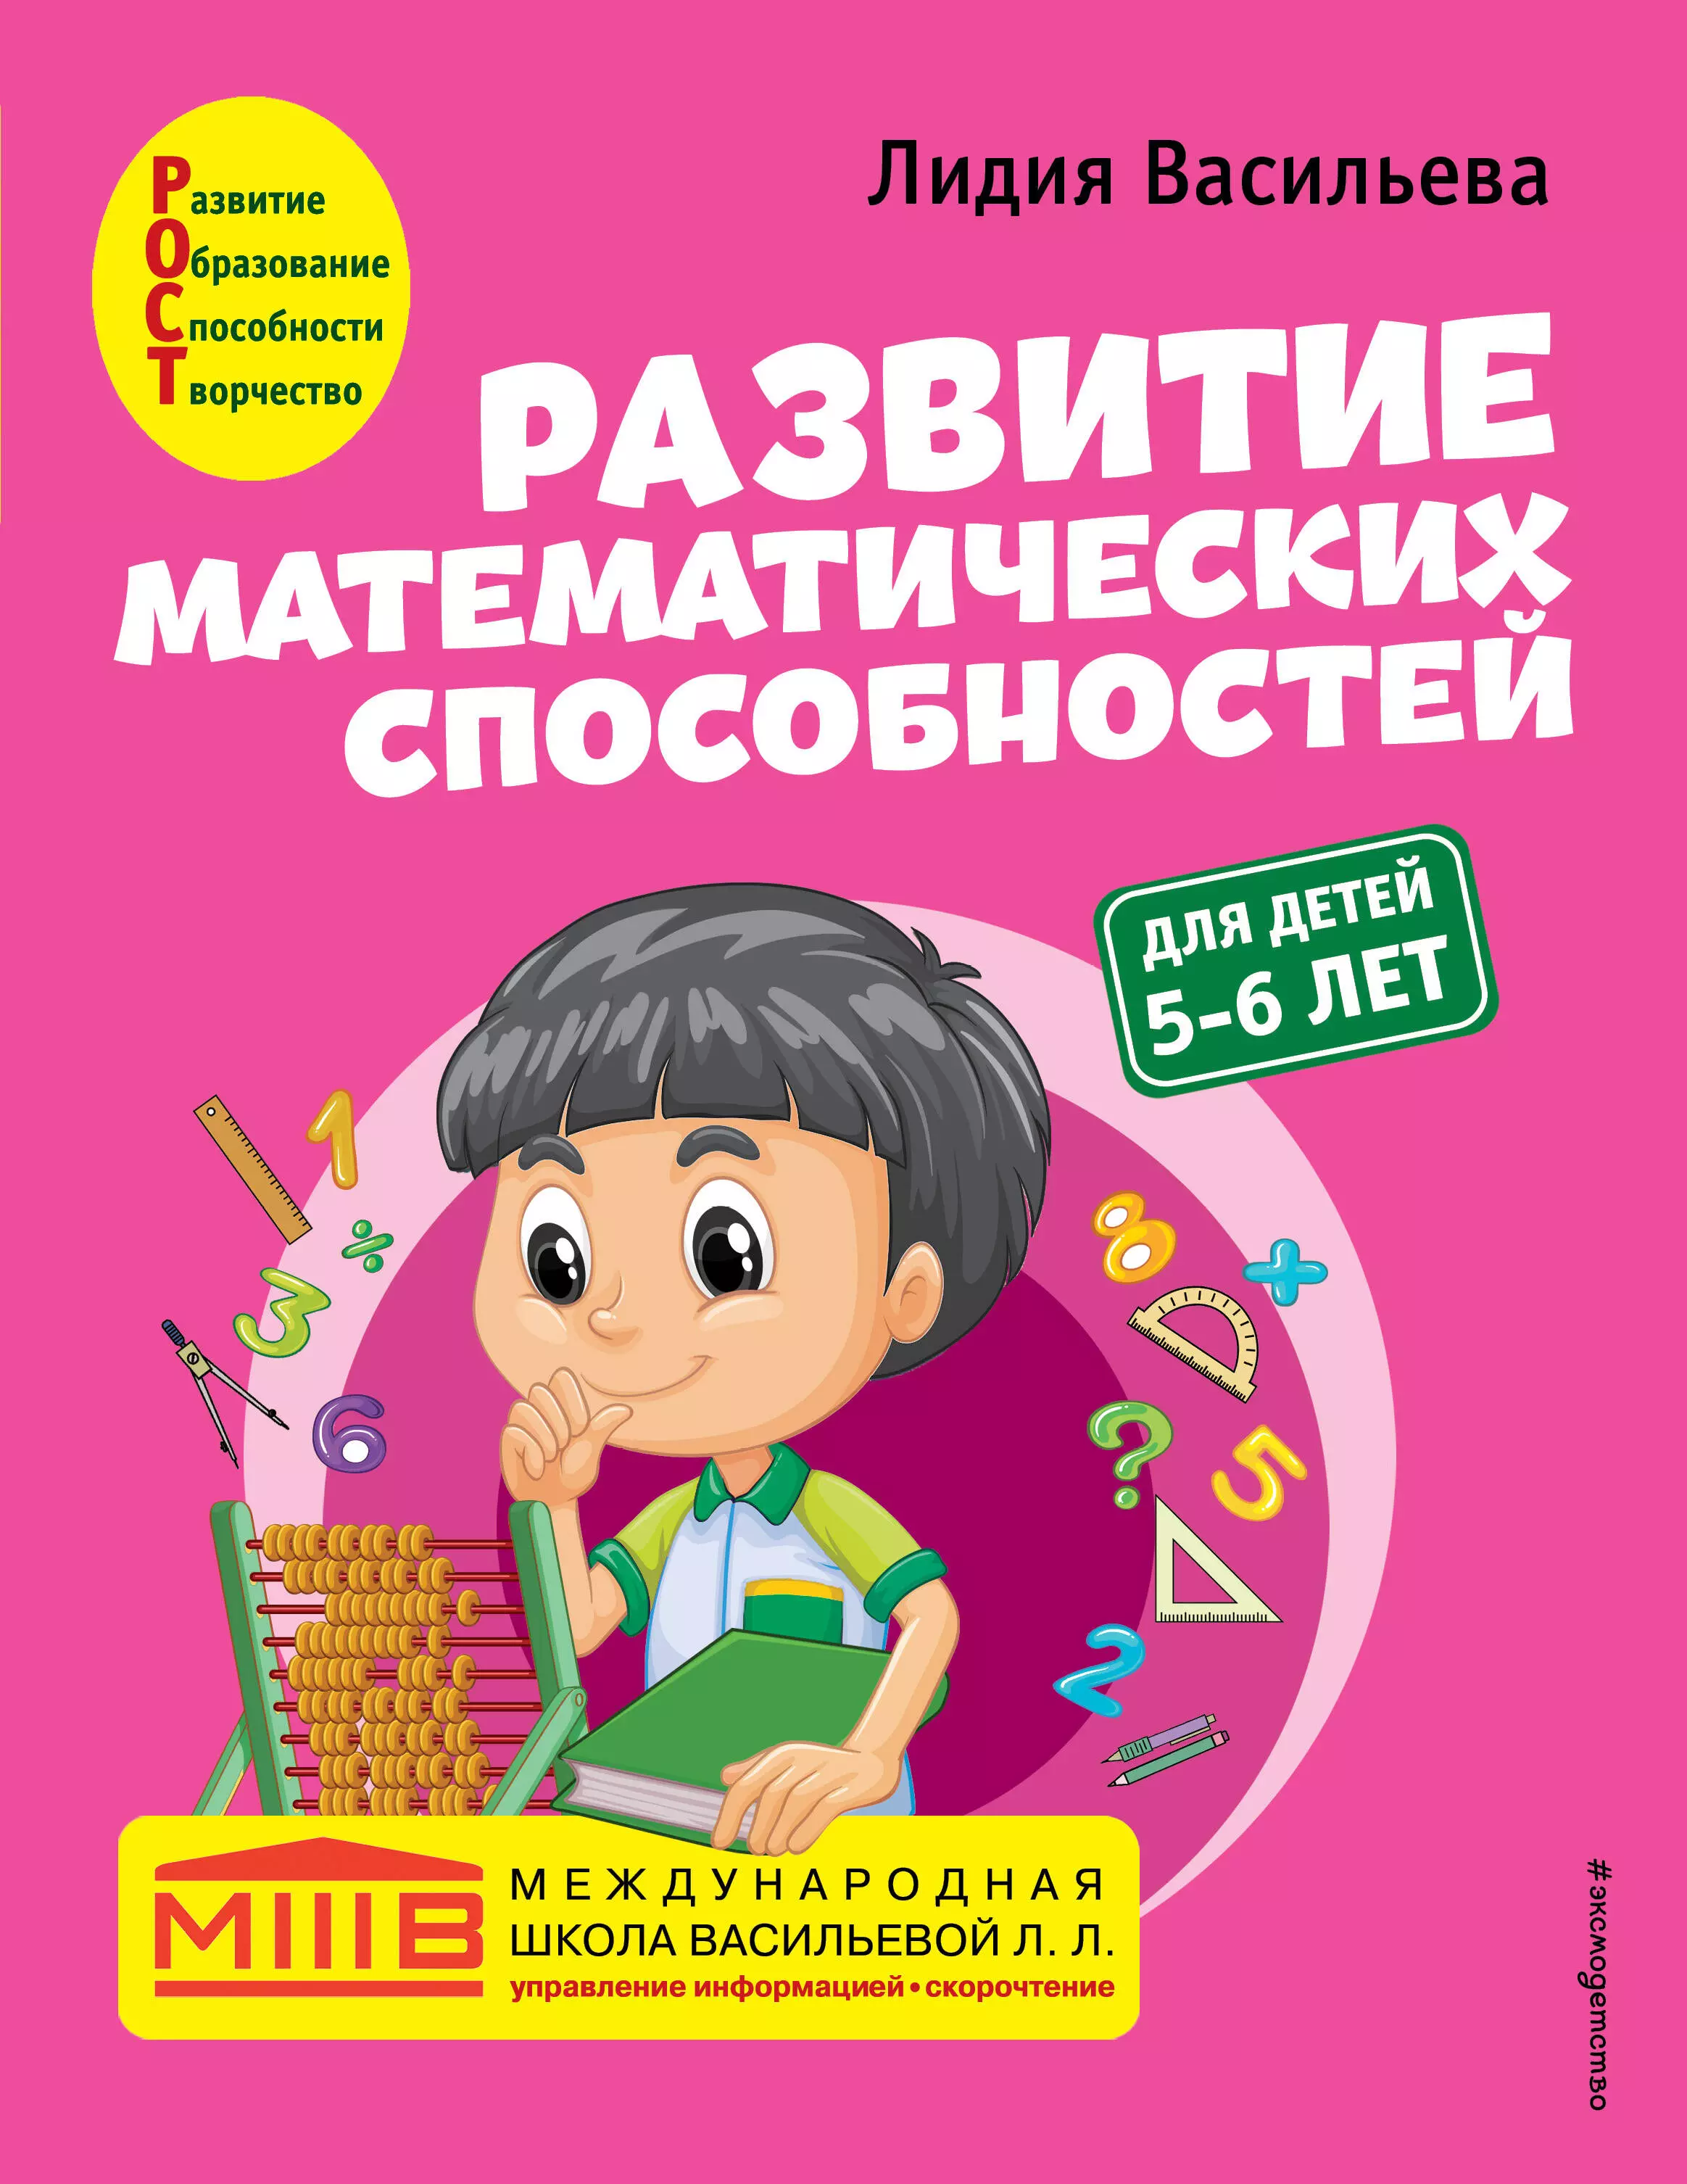 Васильева Лидия Л. Развитие математических способностей: для детей 5-6 лет